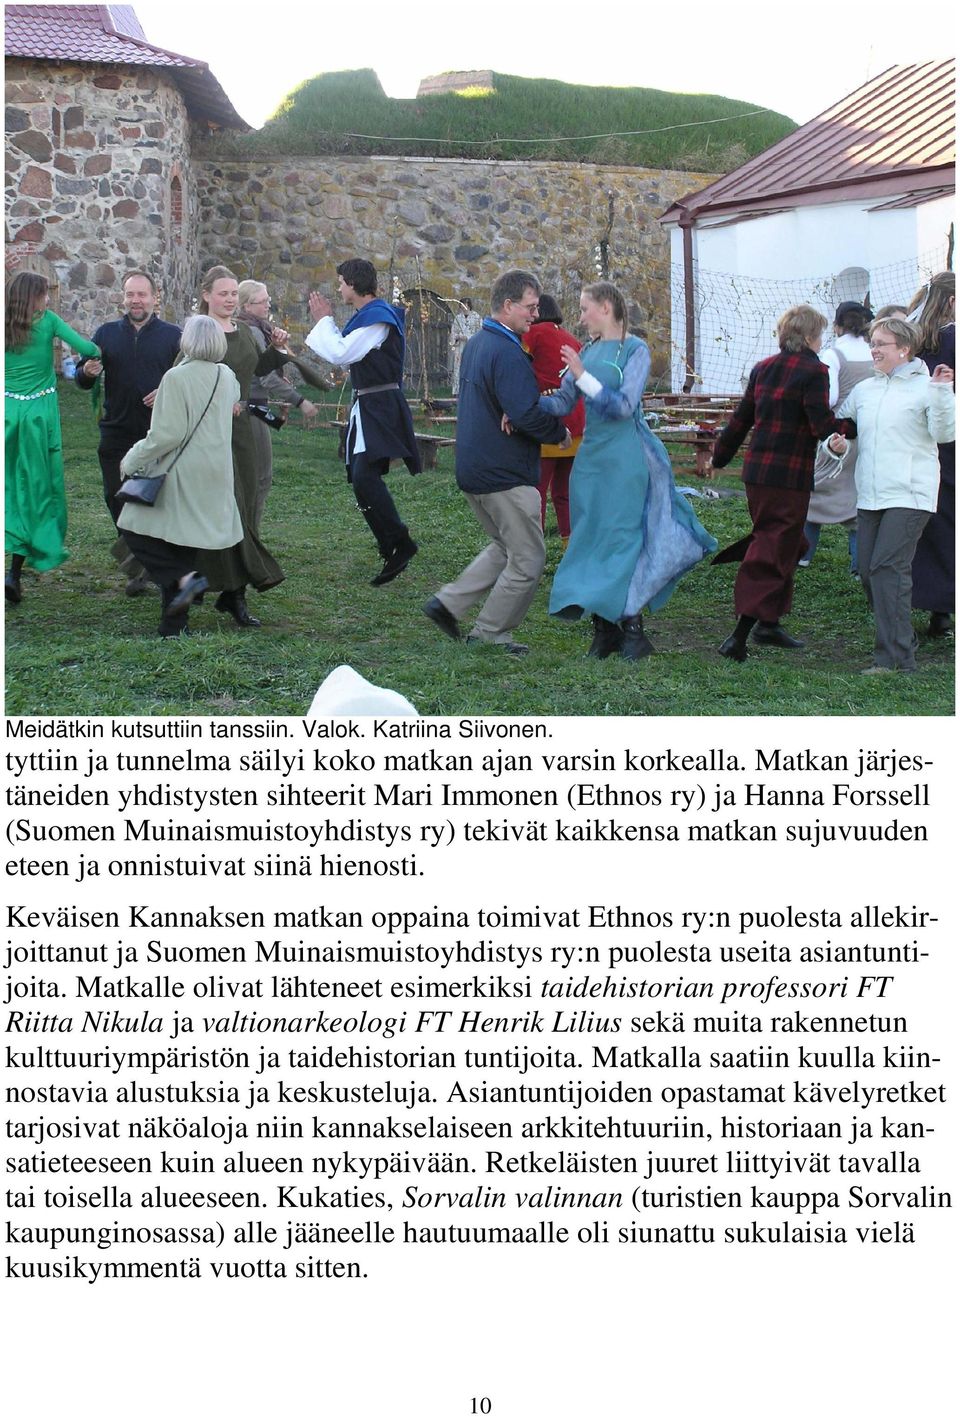 Keväisen Kannaksen matkan oppaina toimivat Ethnos ry:n puolesta allekirjoittanut ja Suomen Muinaismuistoyhdistys ry:n puolesta useita asiantuntijoita.